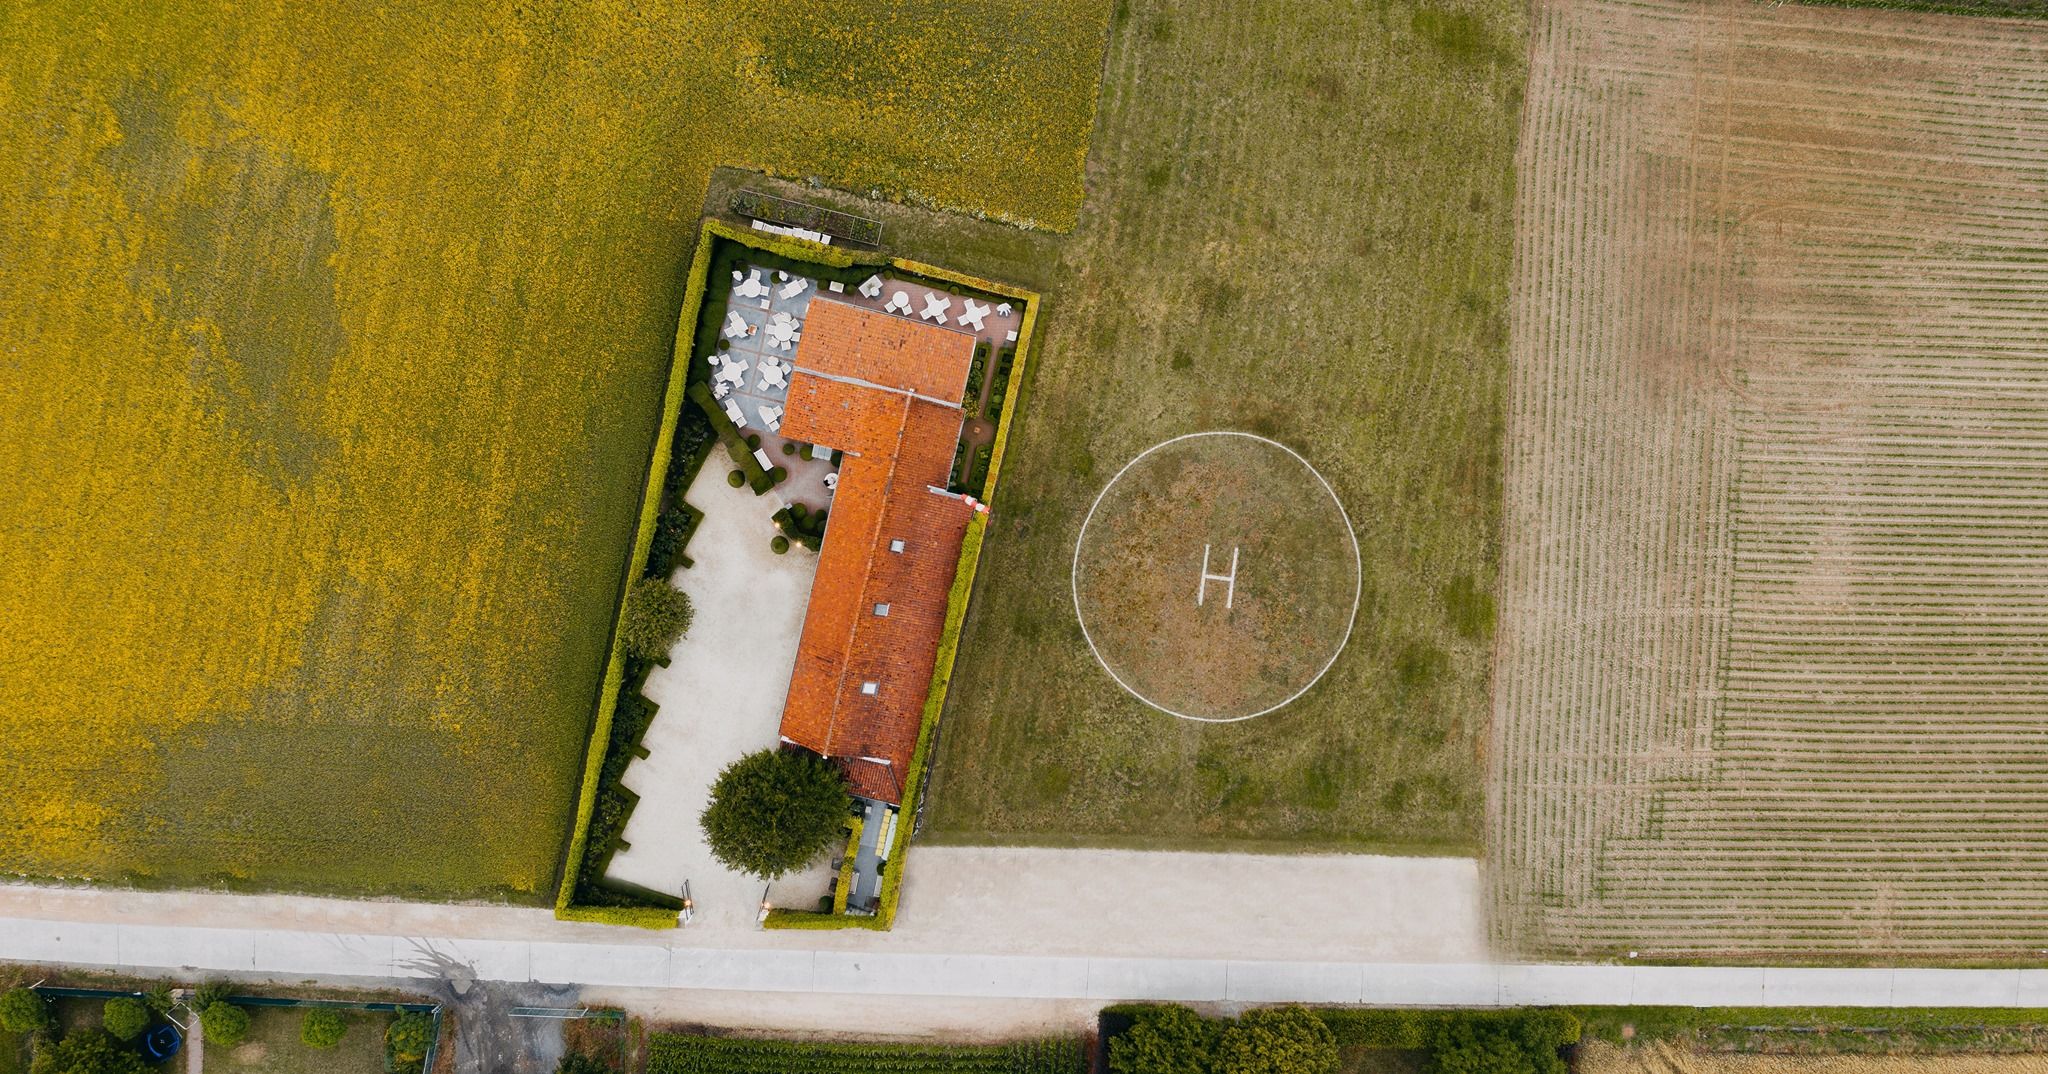 Aerial view of Hof van Cleve